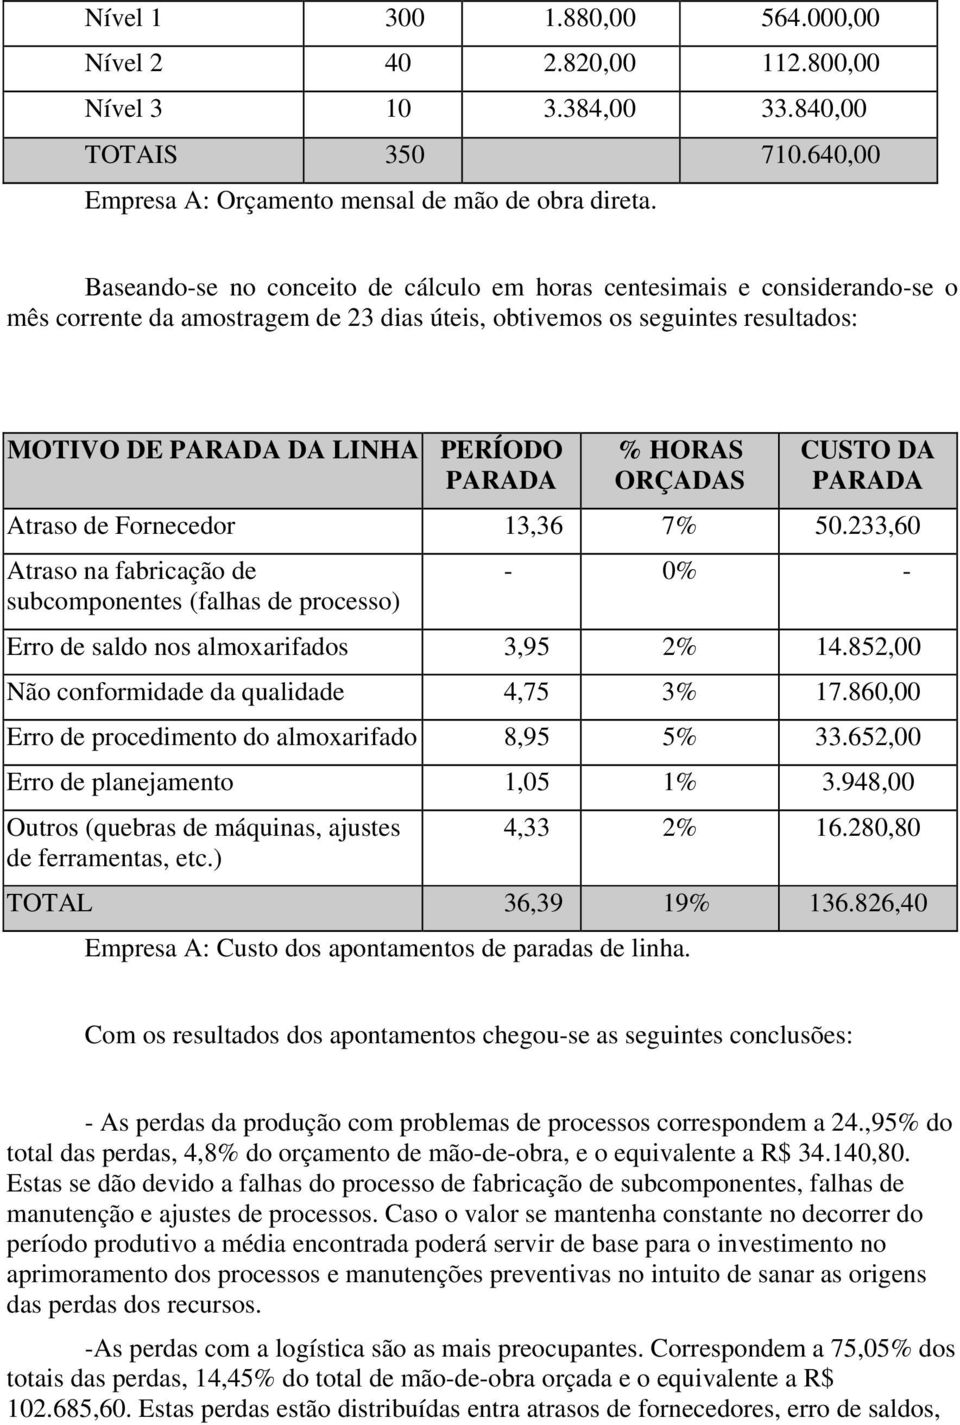 HORAS ORÇADAS CUSTO DA PARADA Atraso de Fornecedor 13,36 7% 50.233,60 Atraso na fabricação de - 0% - subcomponentes (falhas de processo) Erro de saldo nos almoxarifados 3,95 2% 14.